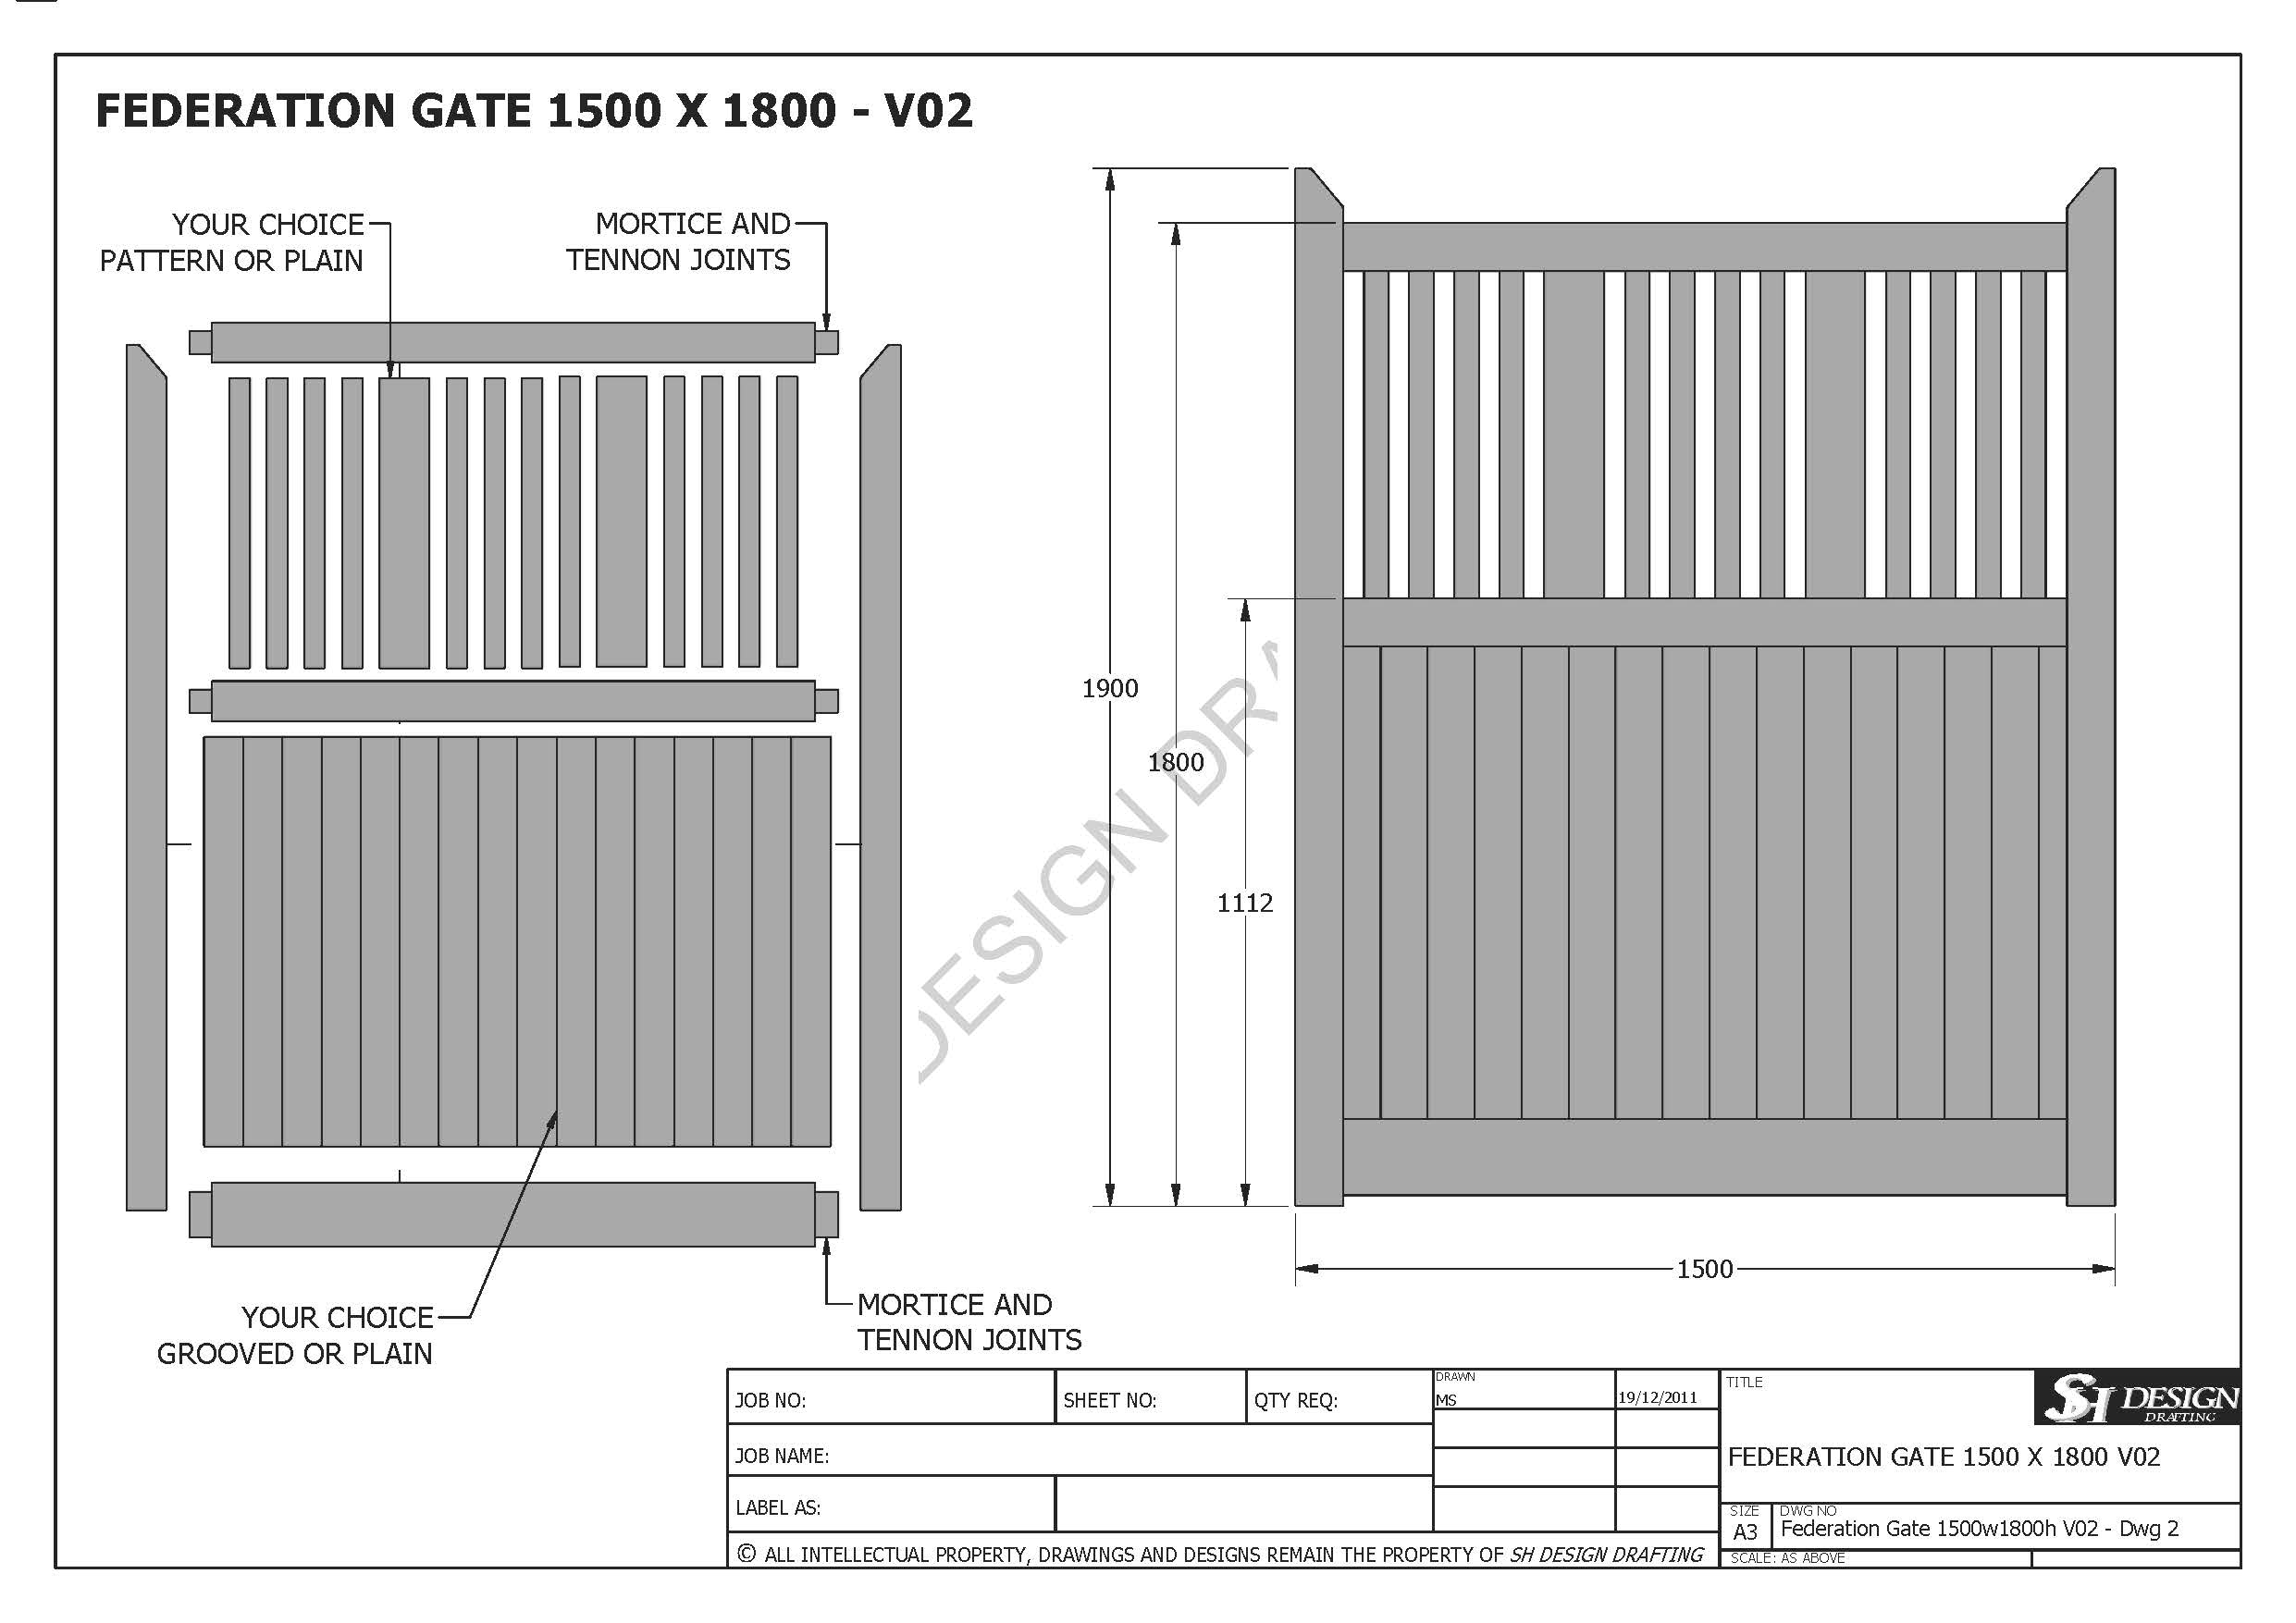 Federation Gate 1500 x 1800 - V02